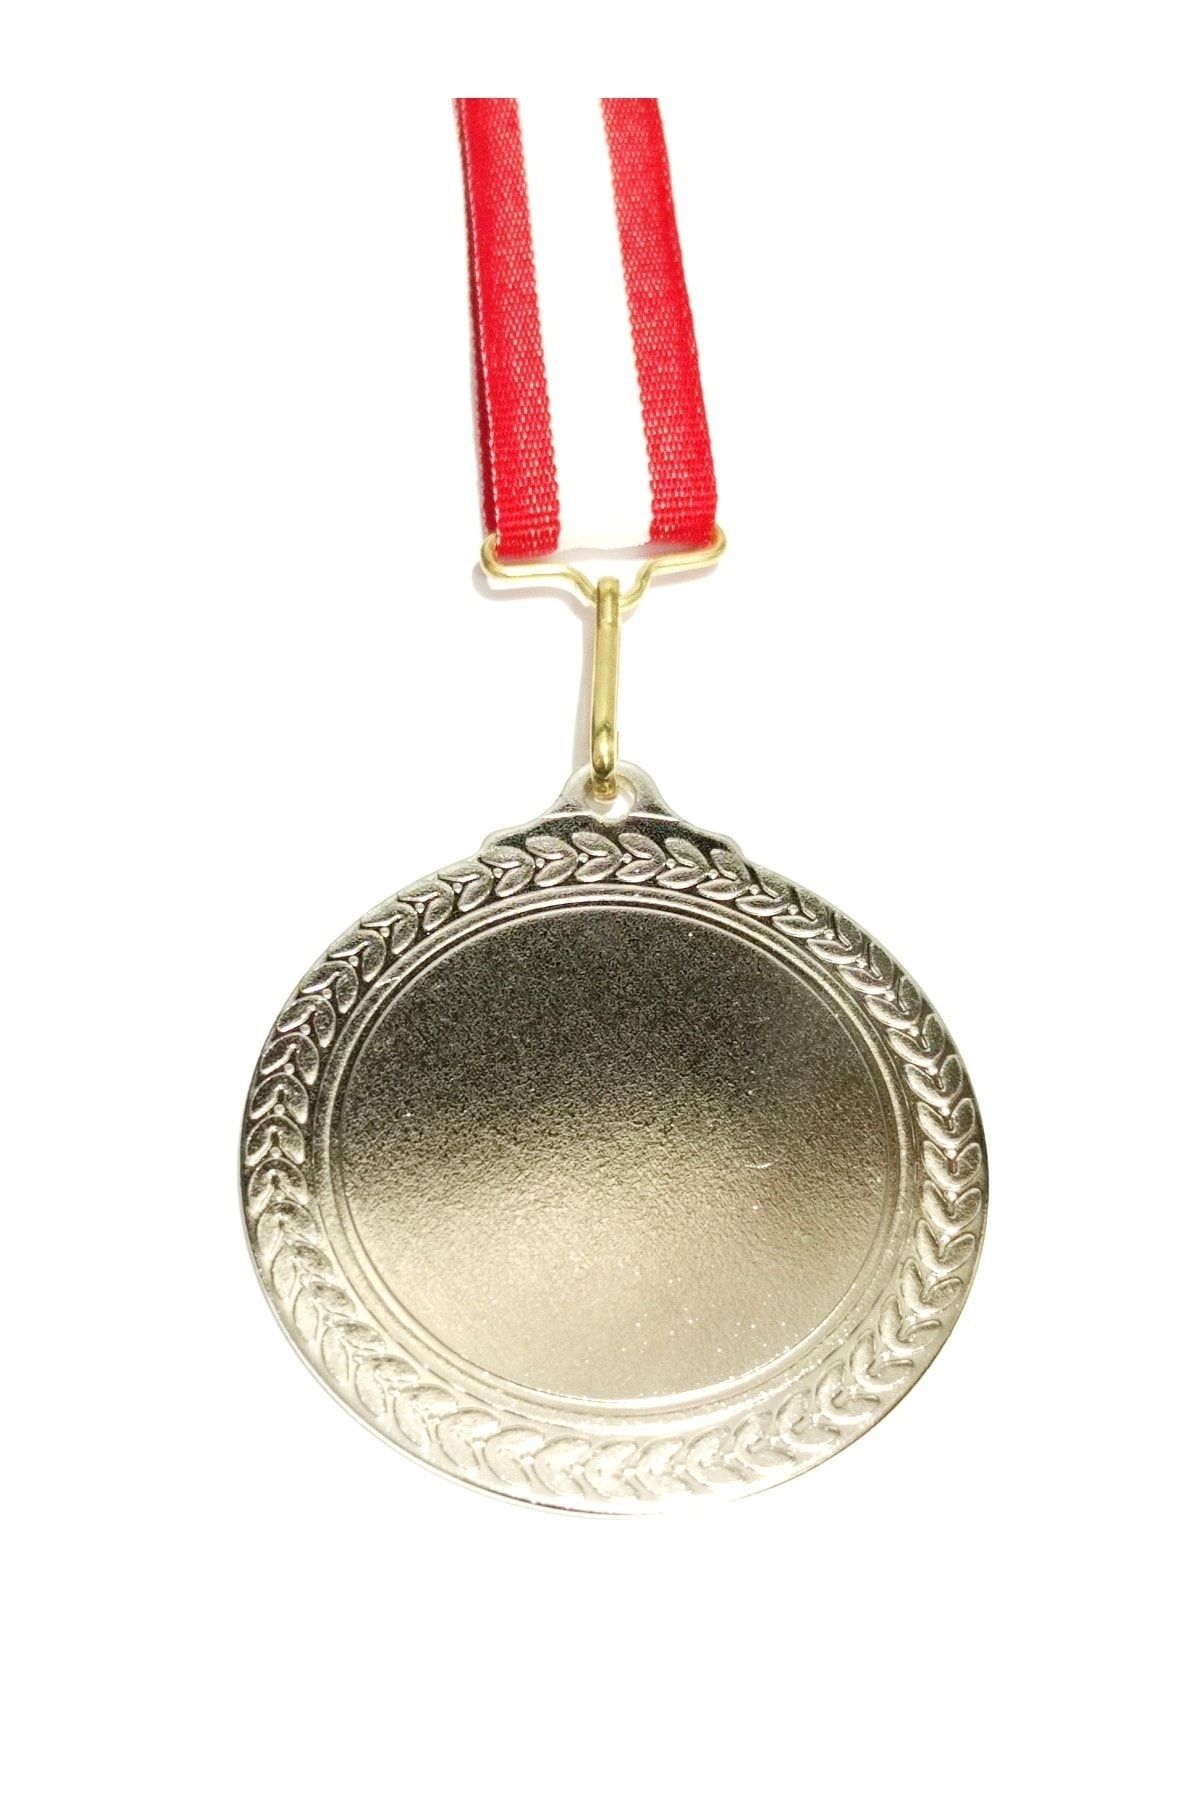 bidünyamadalya Gümüş Madalya (boş Baskısız)